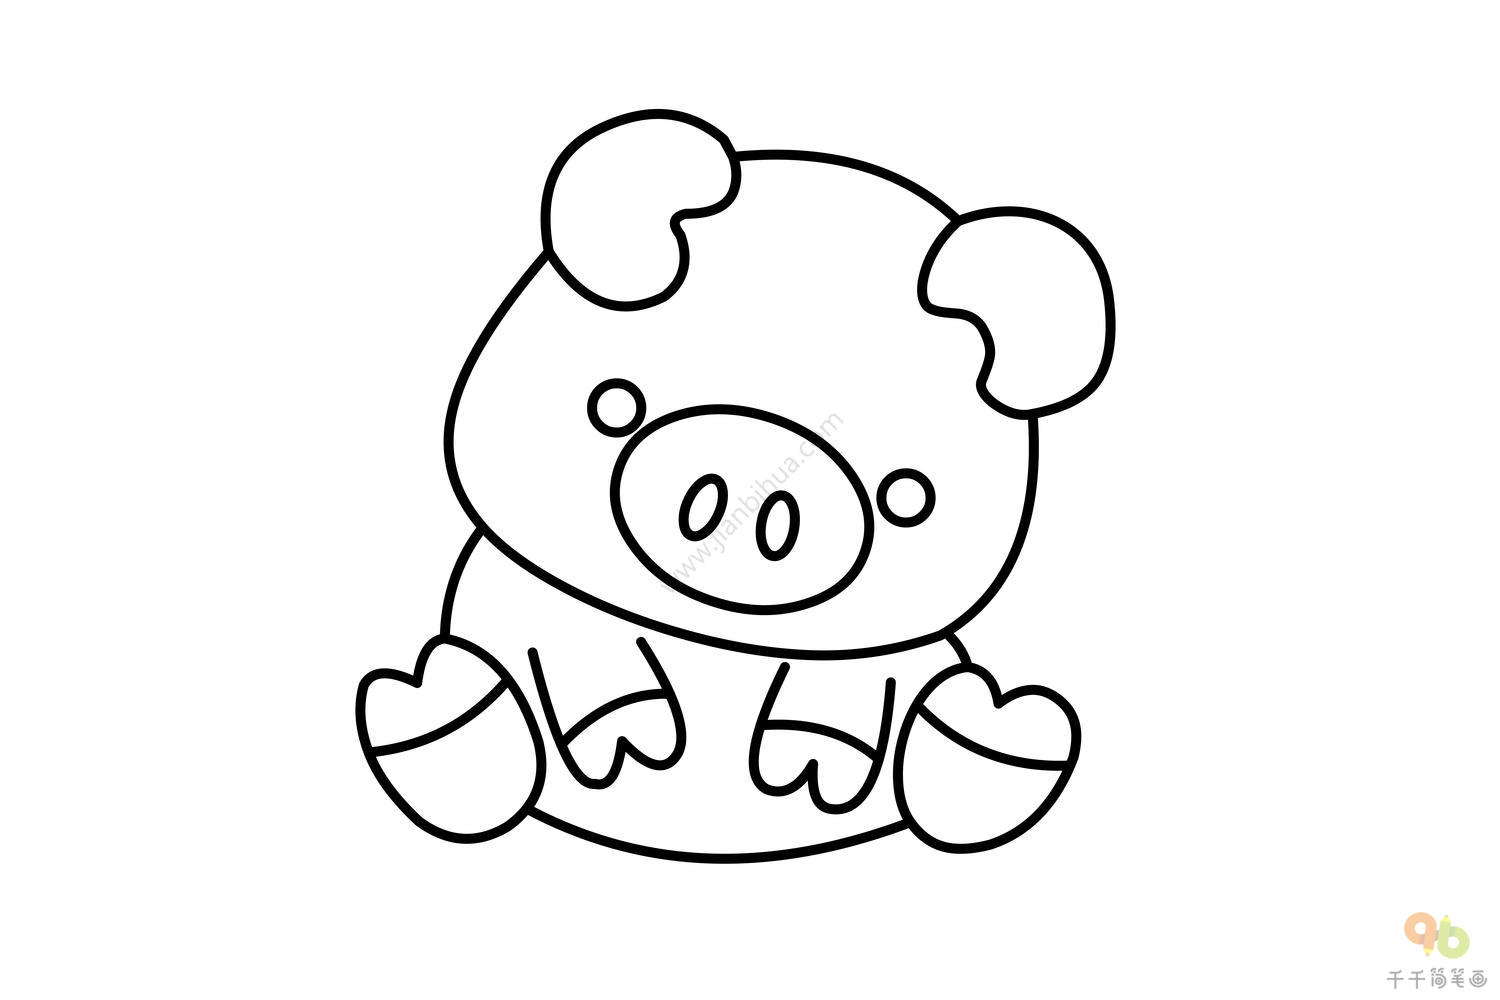 卡通猪怎么画 简单的画法两分钟就能学会_伊秀视频|yxlady.com